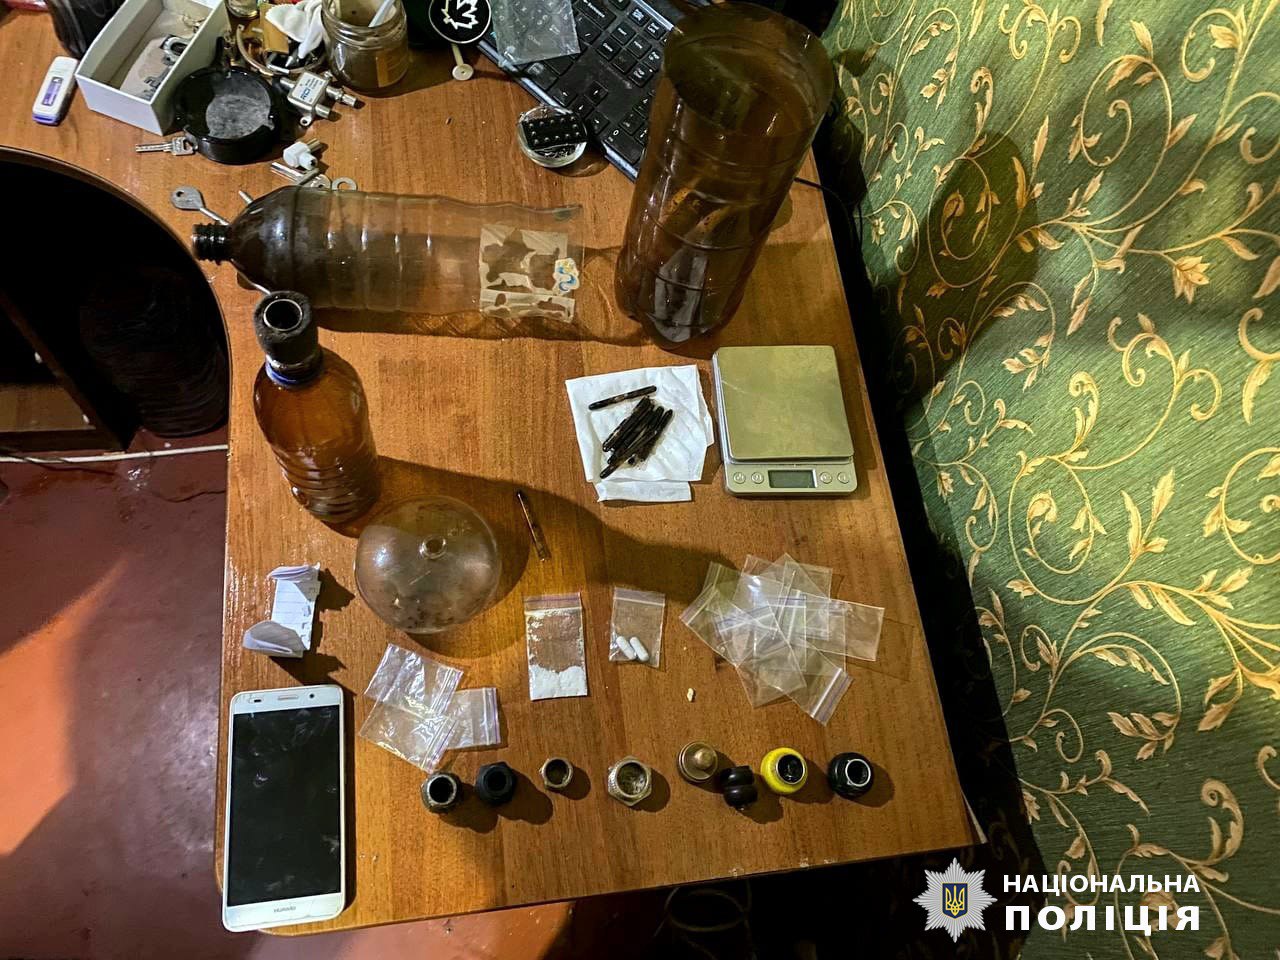 Спіймали торгівку наркотиками  у Харкові правоохоронці